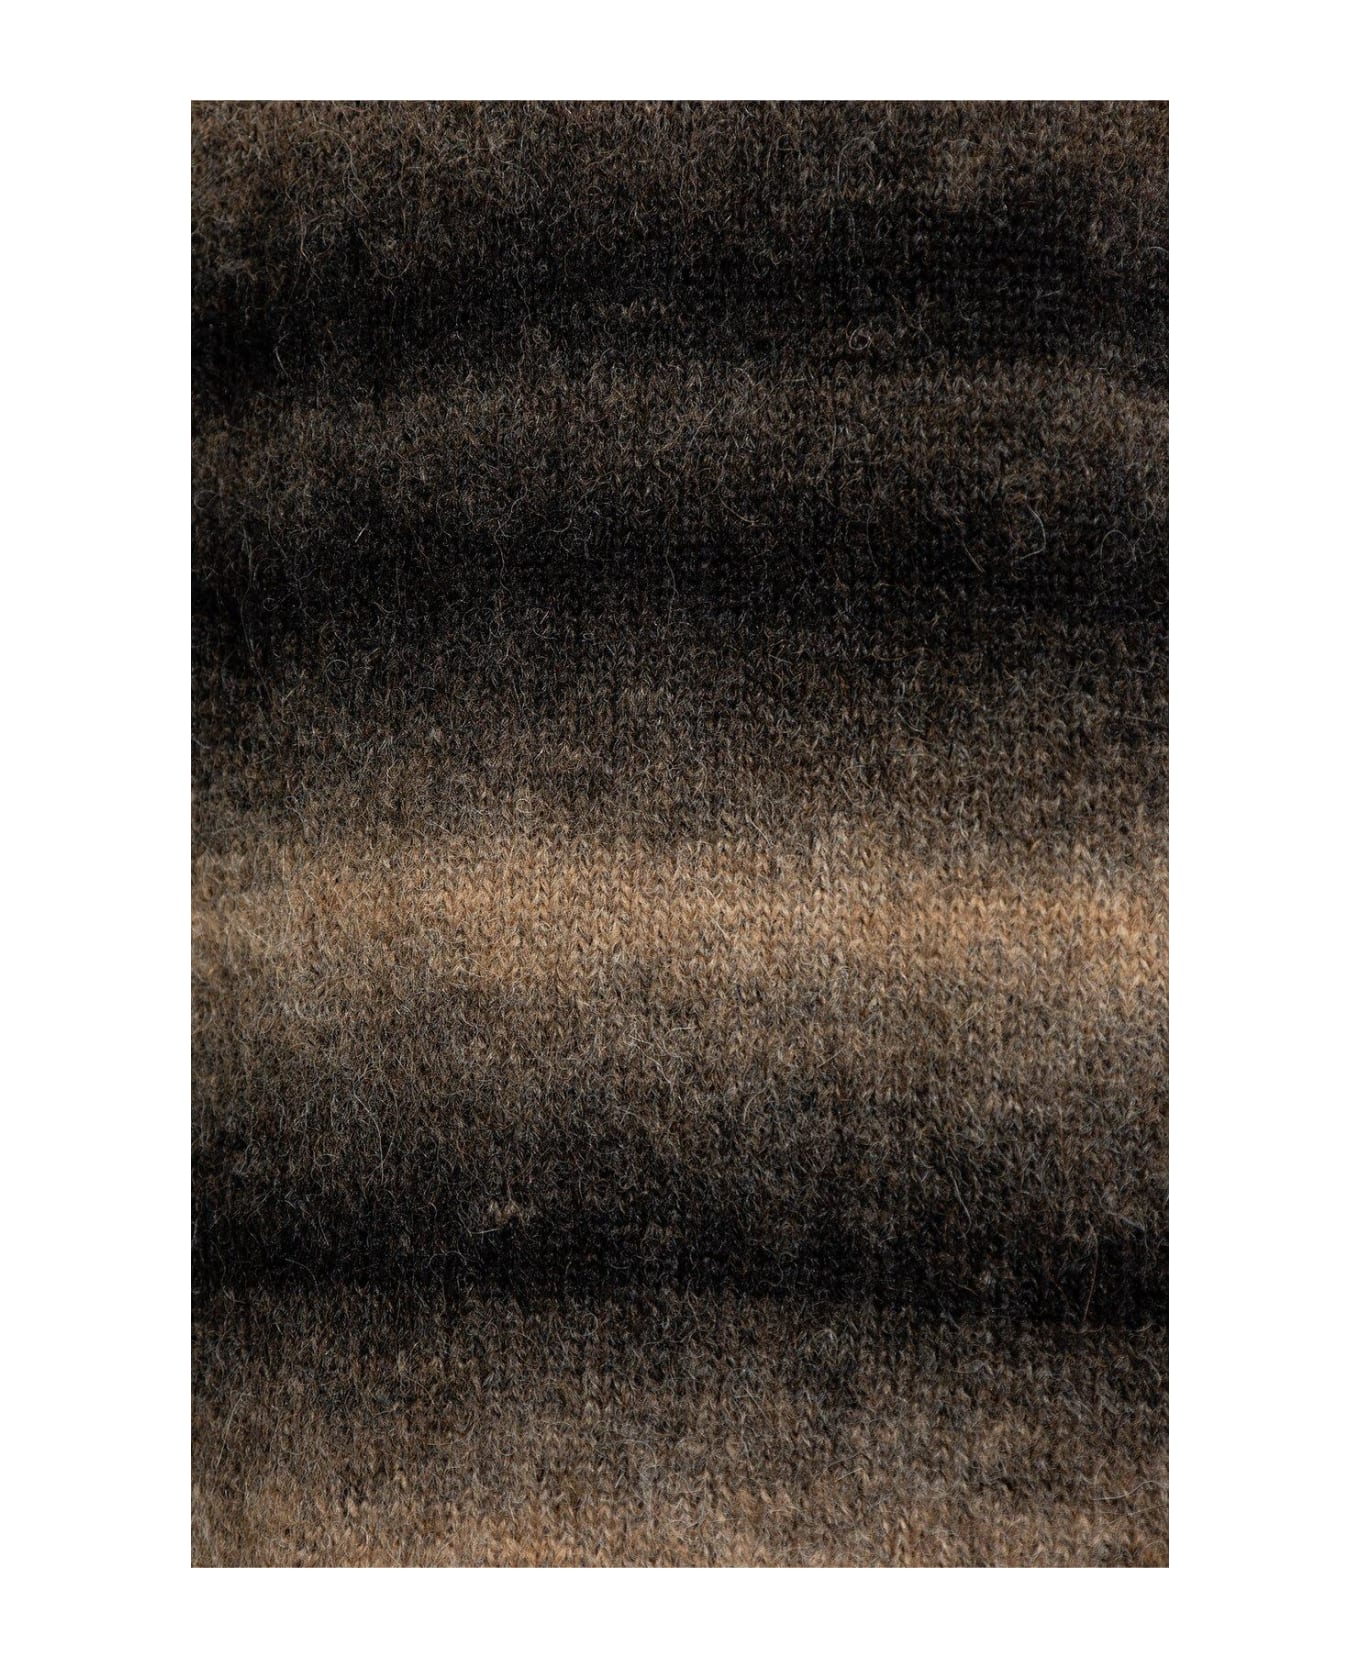 Paul Smith Striped Sweater - Cammello nero